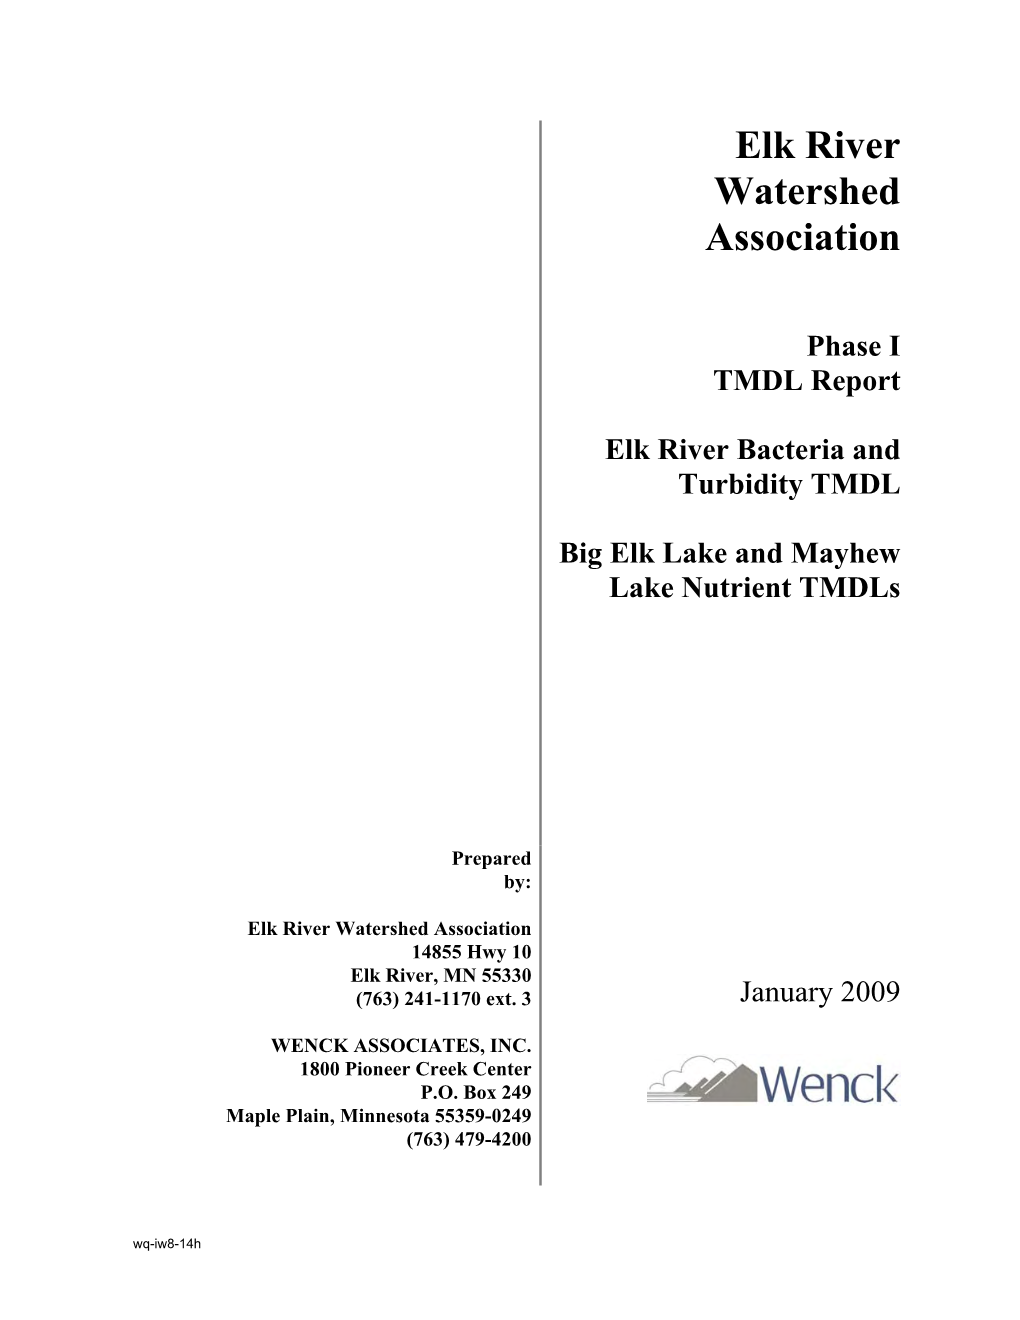 Elk River Watershed Association Phase I TMDL Report